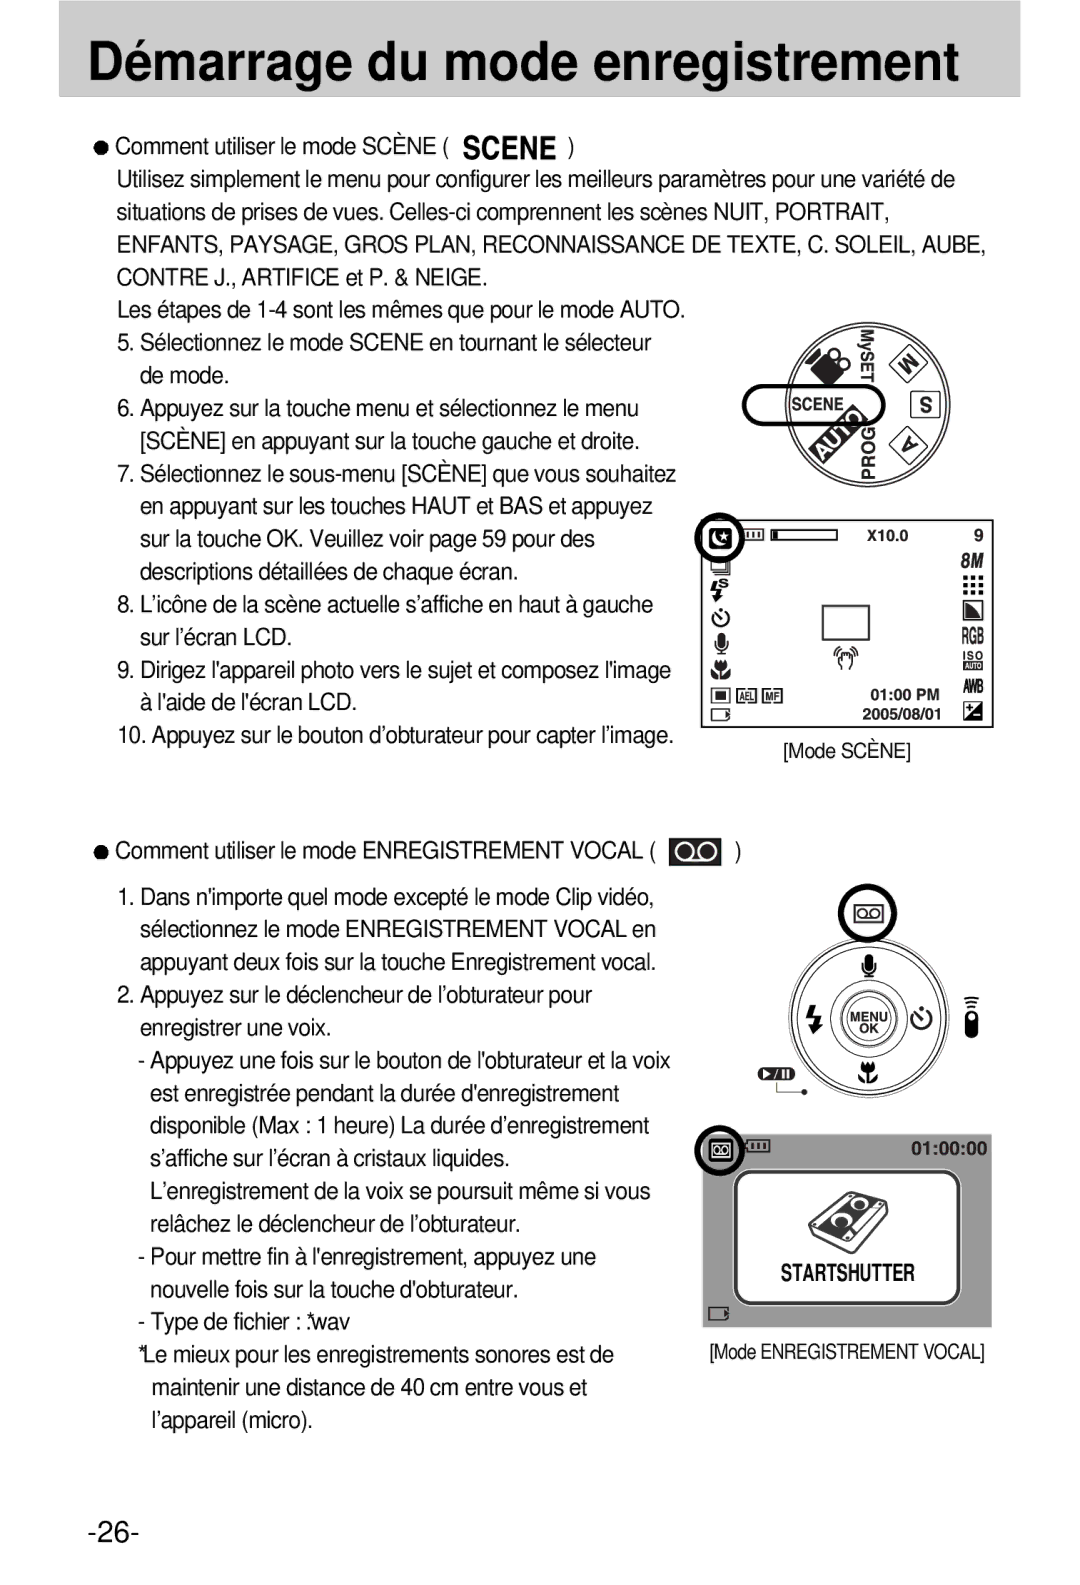 Samsung EC-V800ZSBA/FR manual Startshutter 